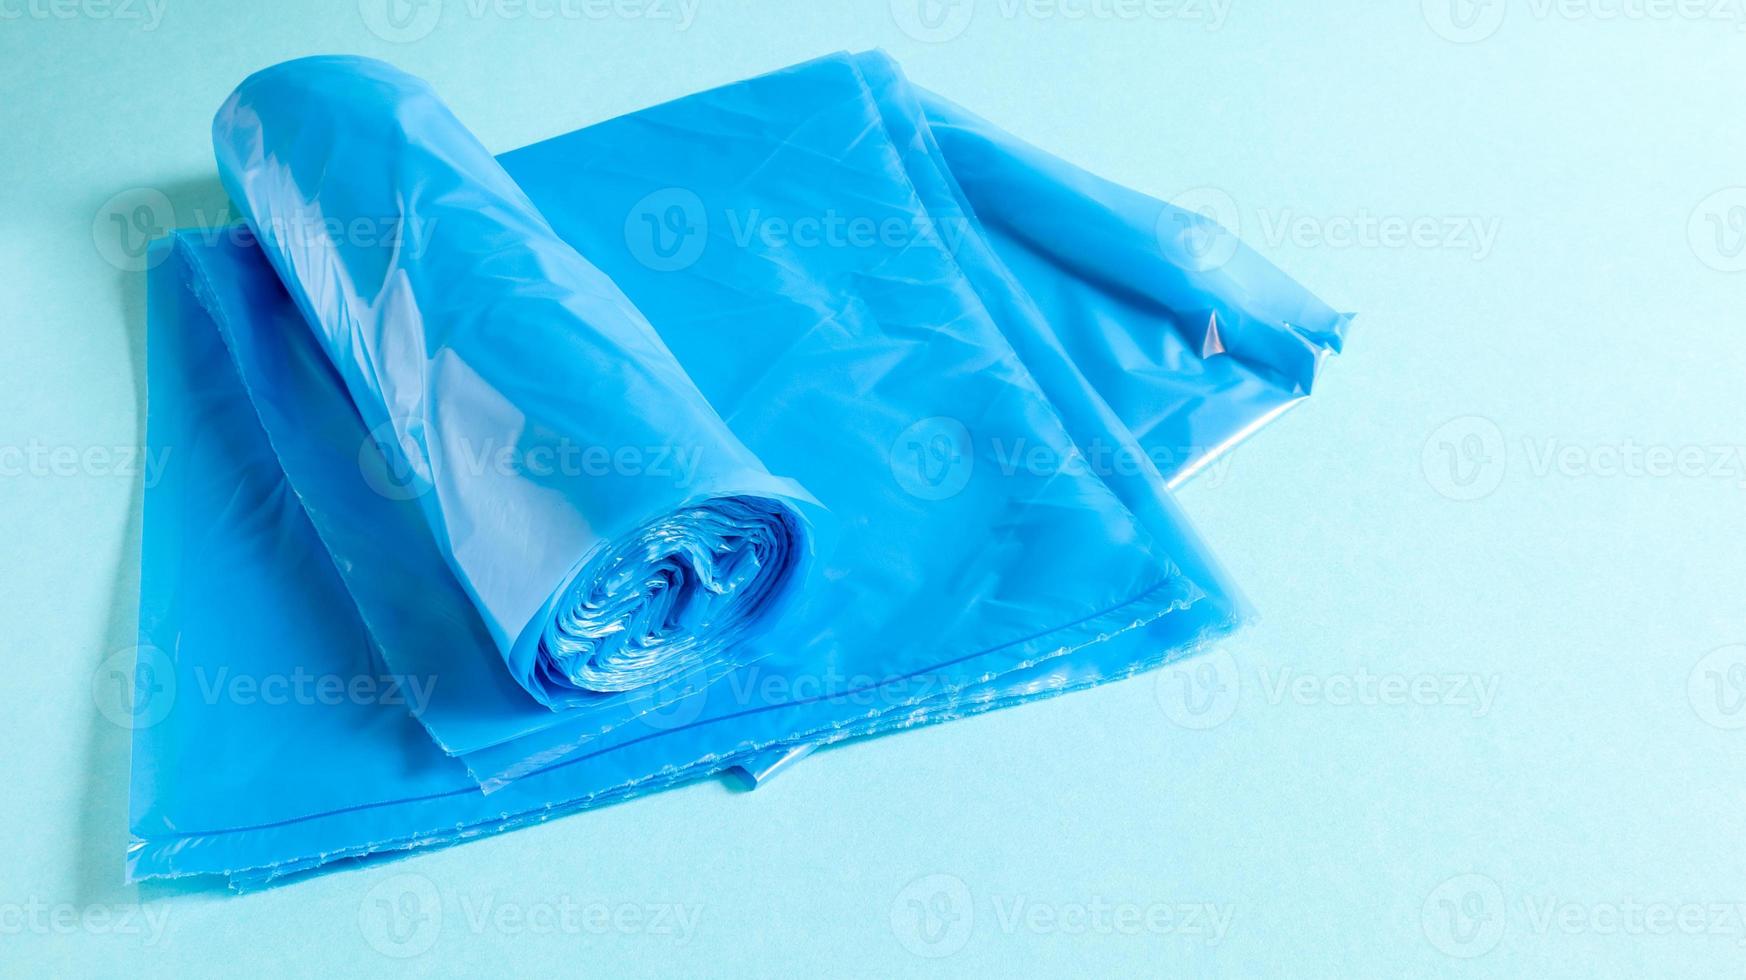 eine Rolle Plastikmüllsäcke in Blau auf blauem Hintergrund. Tüten, die dazu bestimmt sind, Müll darin aufzunehmen und zu Hause verwendet und in verschiedene Müllbehälter gelegt werden. foto